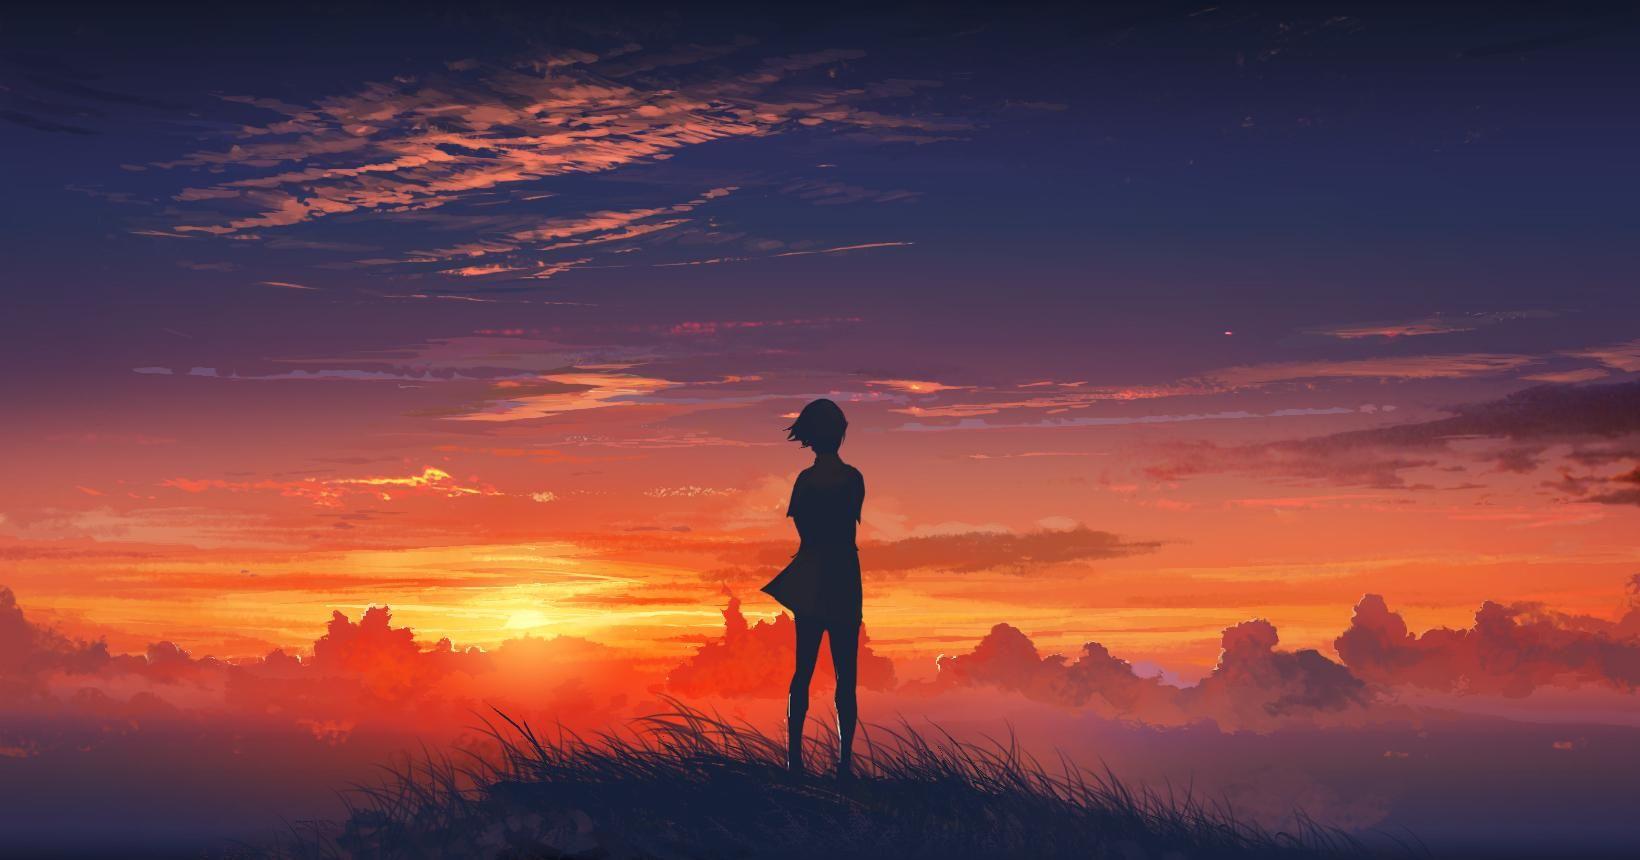 Sunset Anime. 風景デザイン, 夕焼け, アート背景